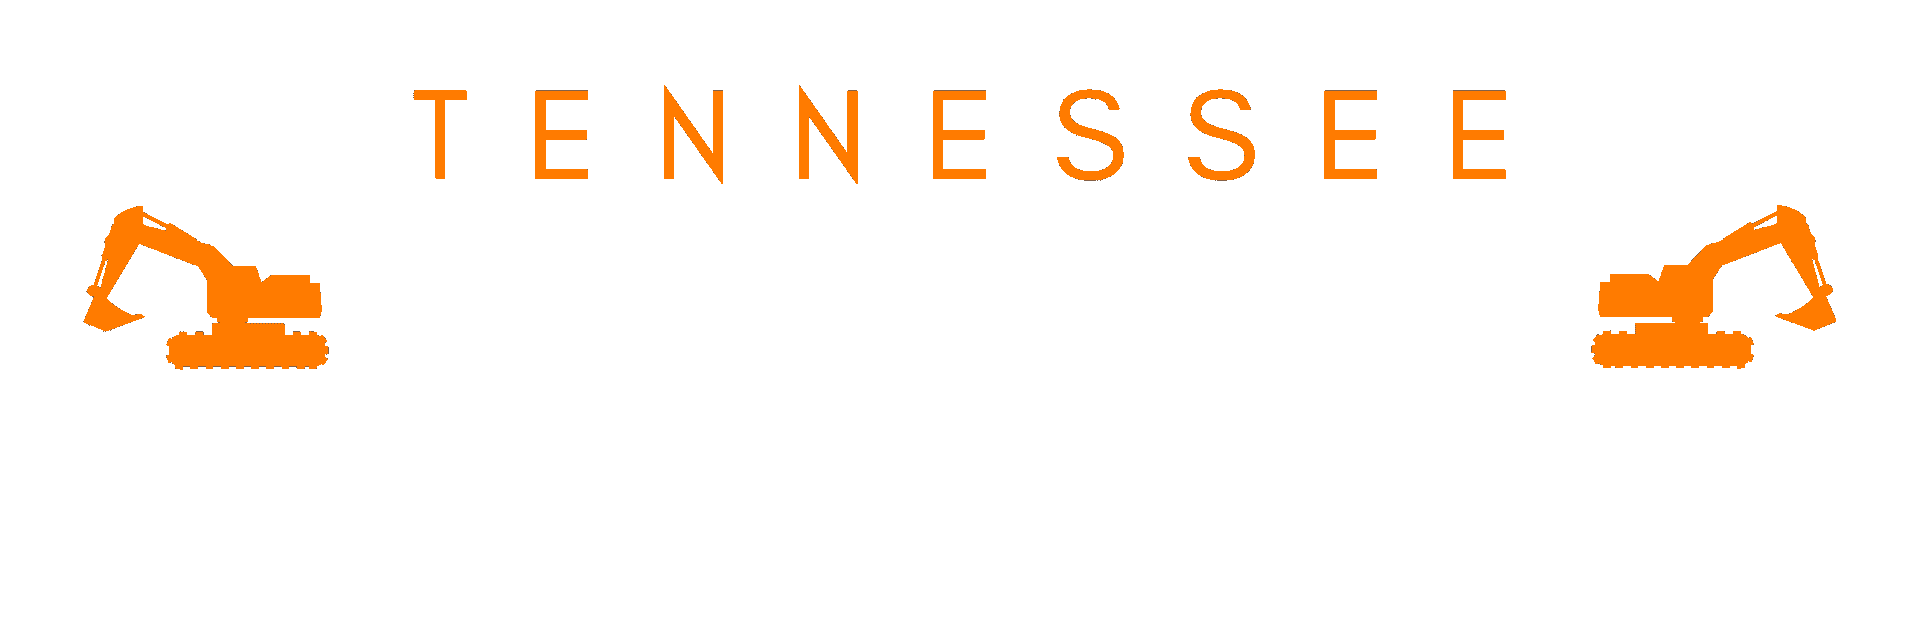 Tn Drainage Solutions, Landscape Solutions Nashville